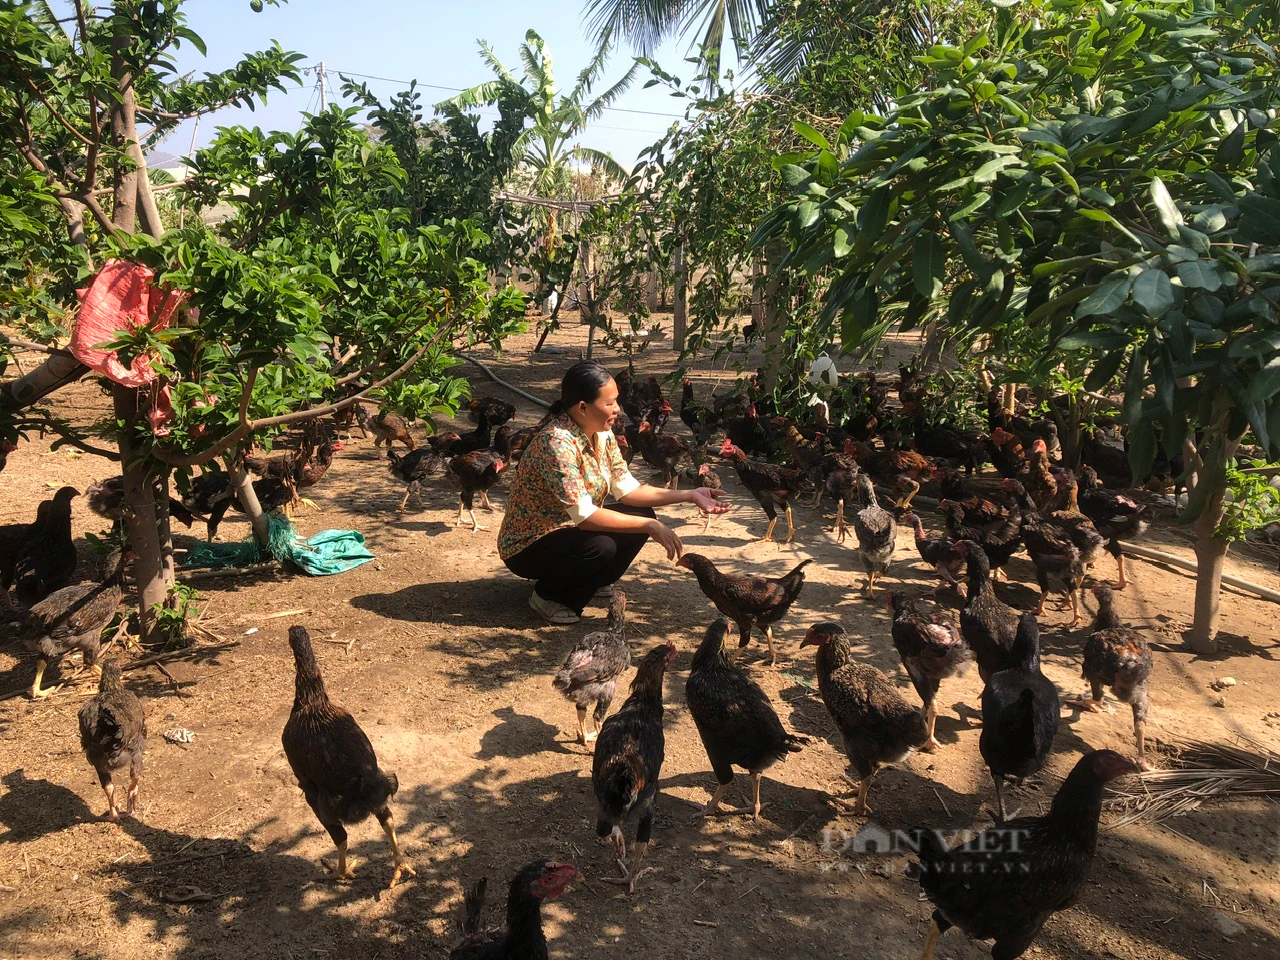 Cộng đồng người Chăm xã Phú Lạc chung tay với chính quyền xây dựng nông thôn mới, nâng cao thu nhập - Ảnh 7.